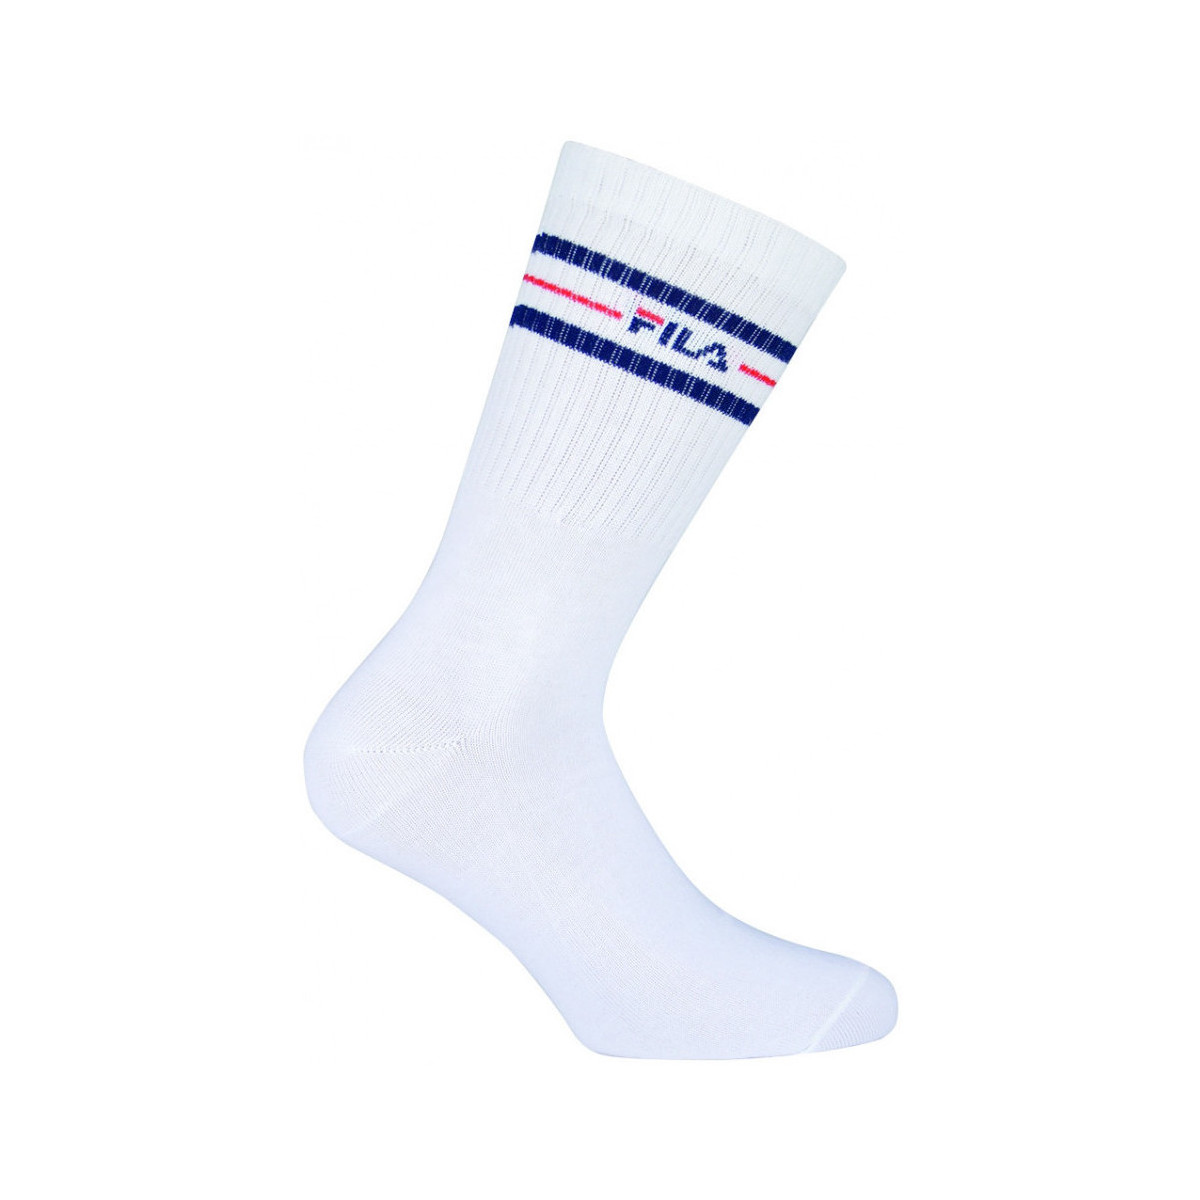 Κάλτσες Fila Normal socks manfila3 pairs per pack